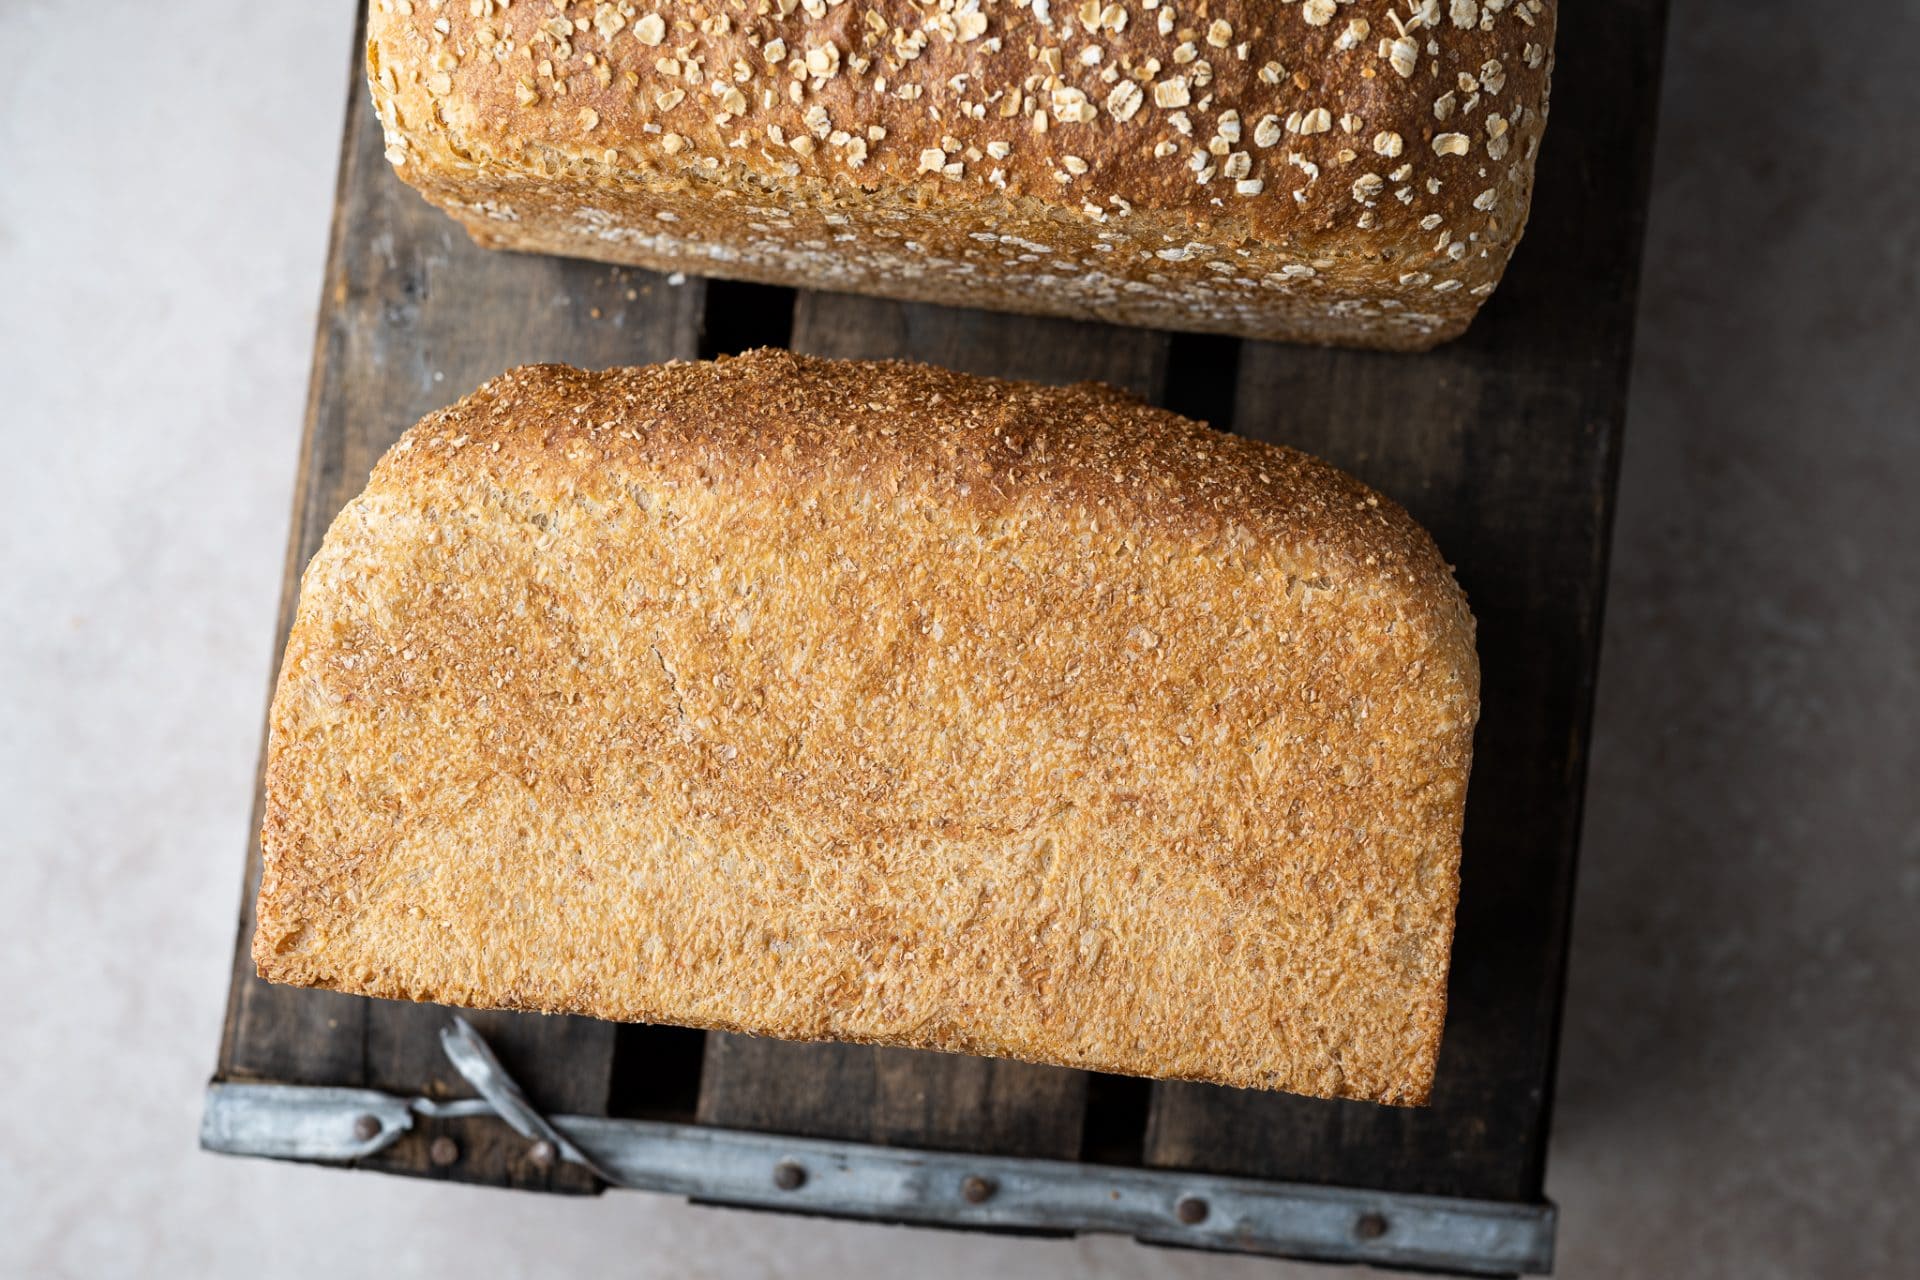 Sandwich bread crust